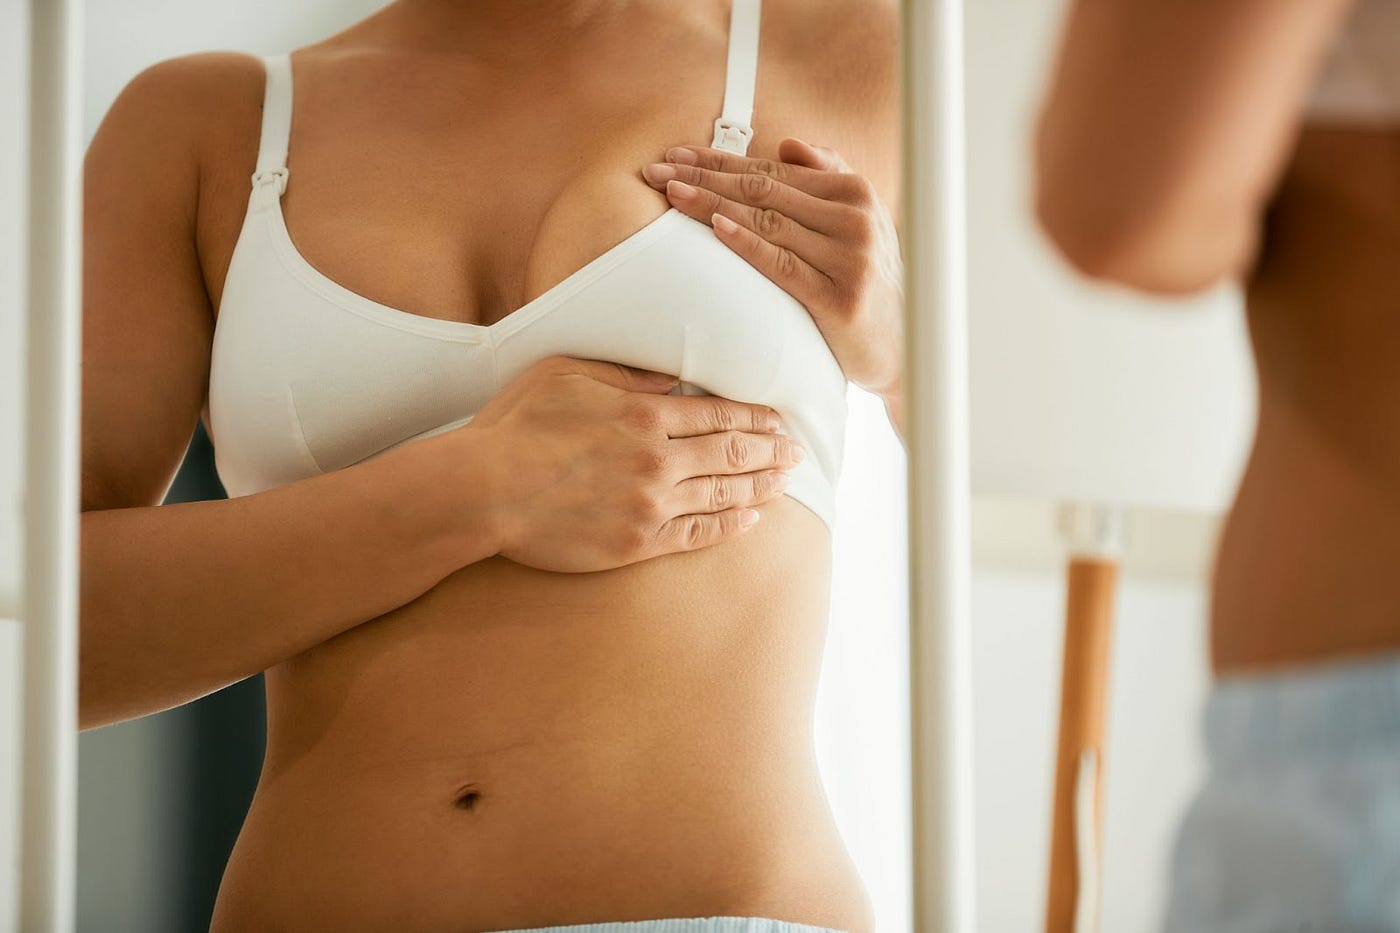 How to Do a Breast Self-Exam - HealthyWomen